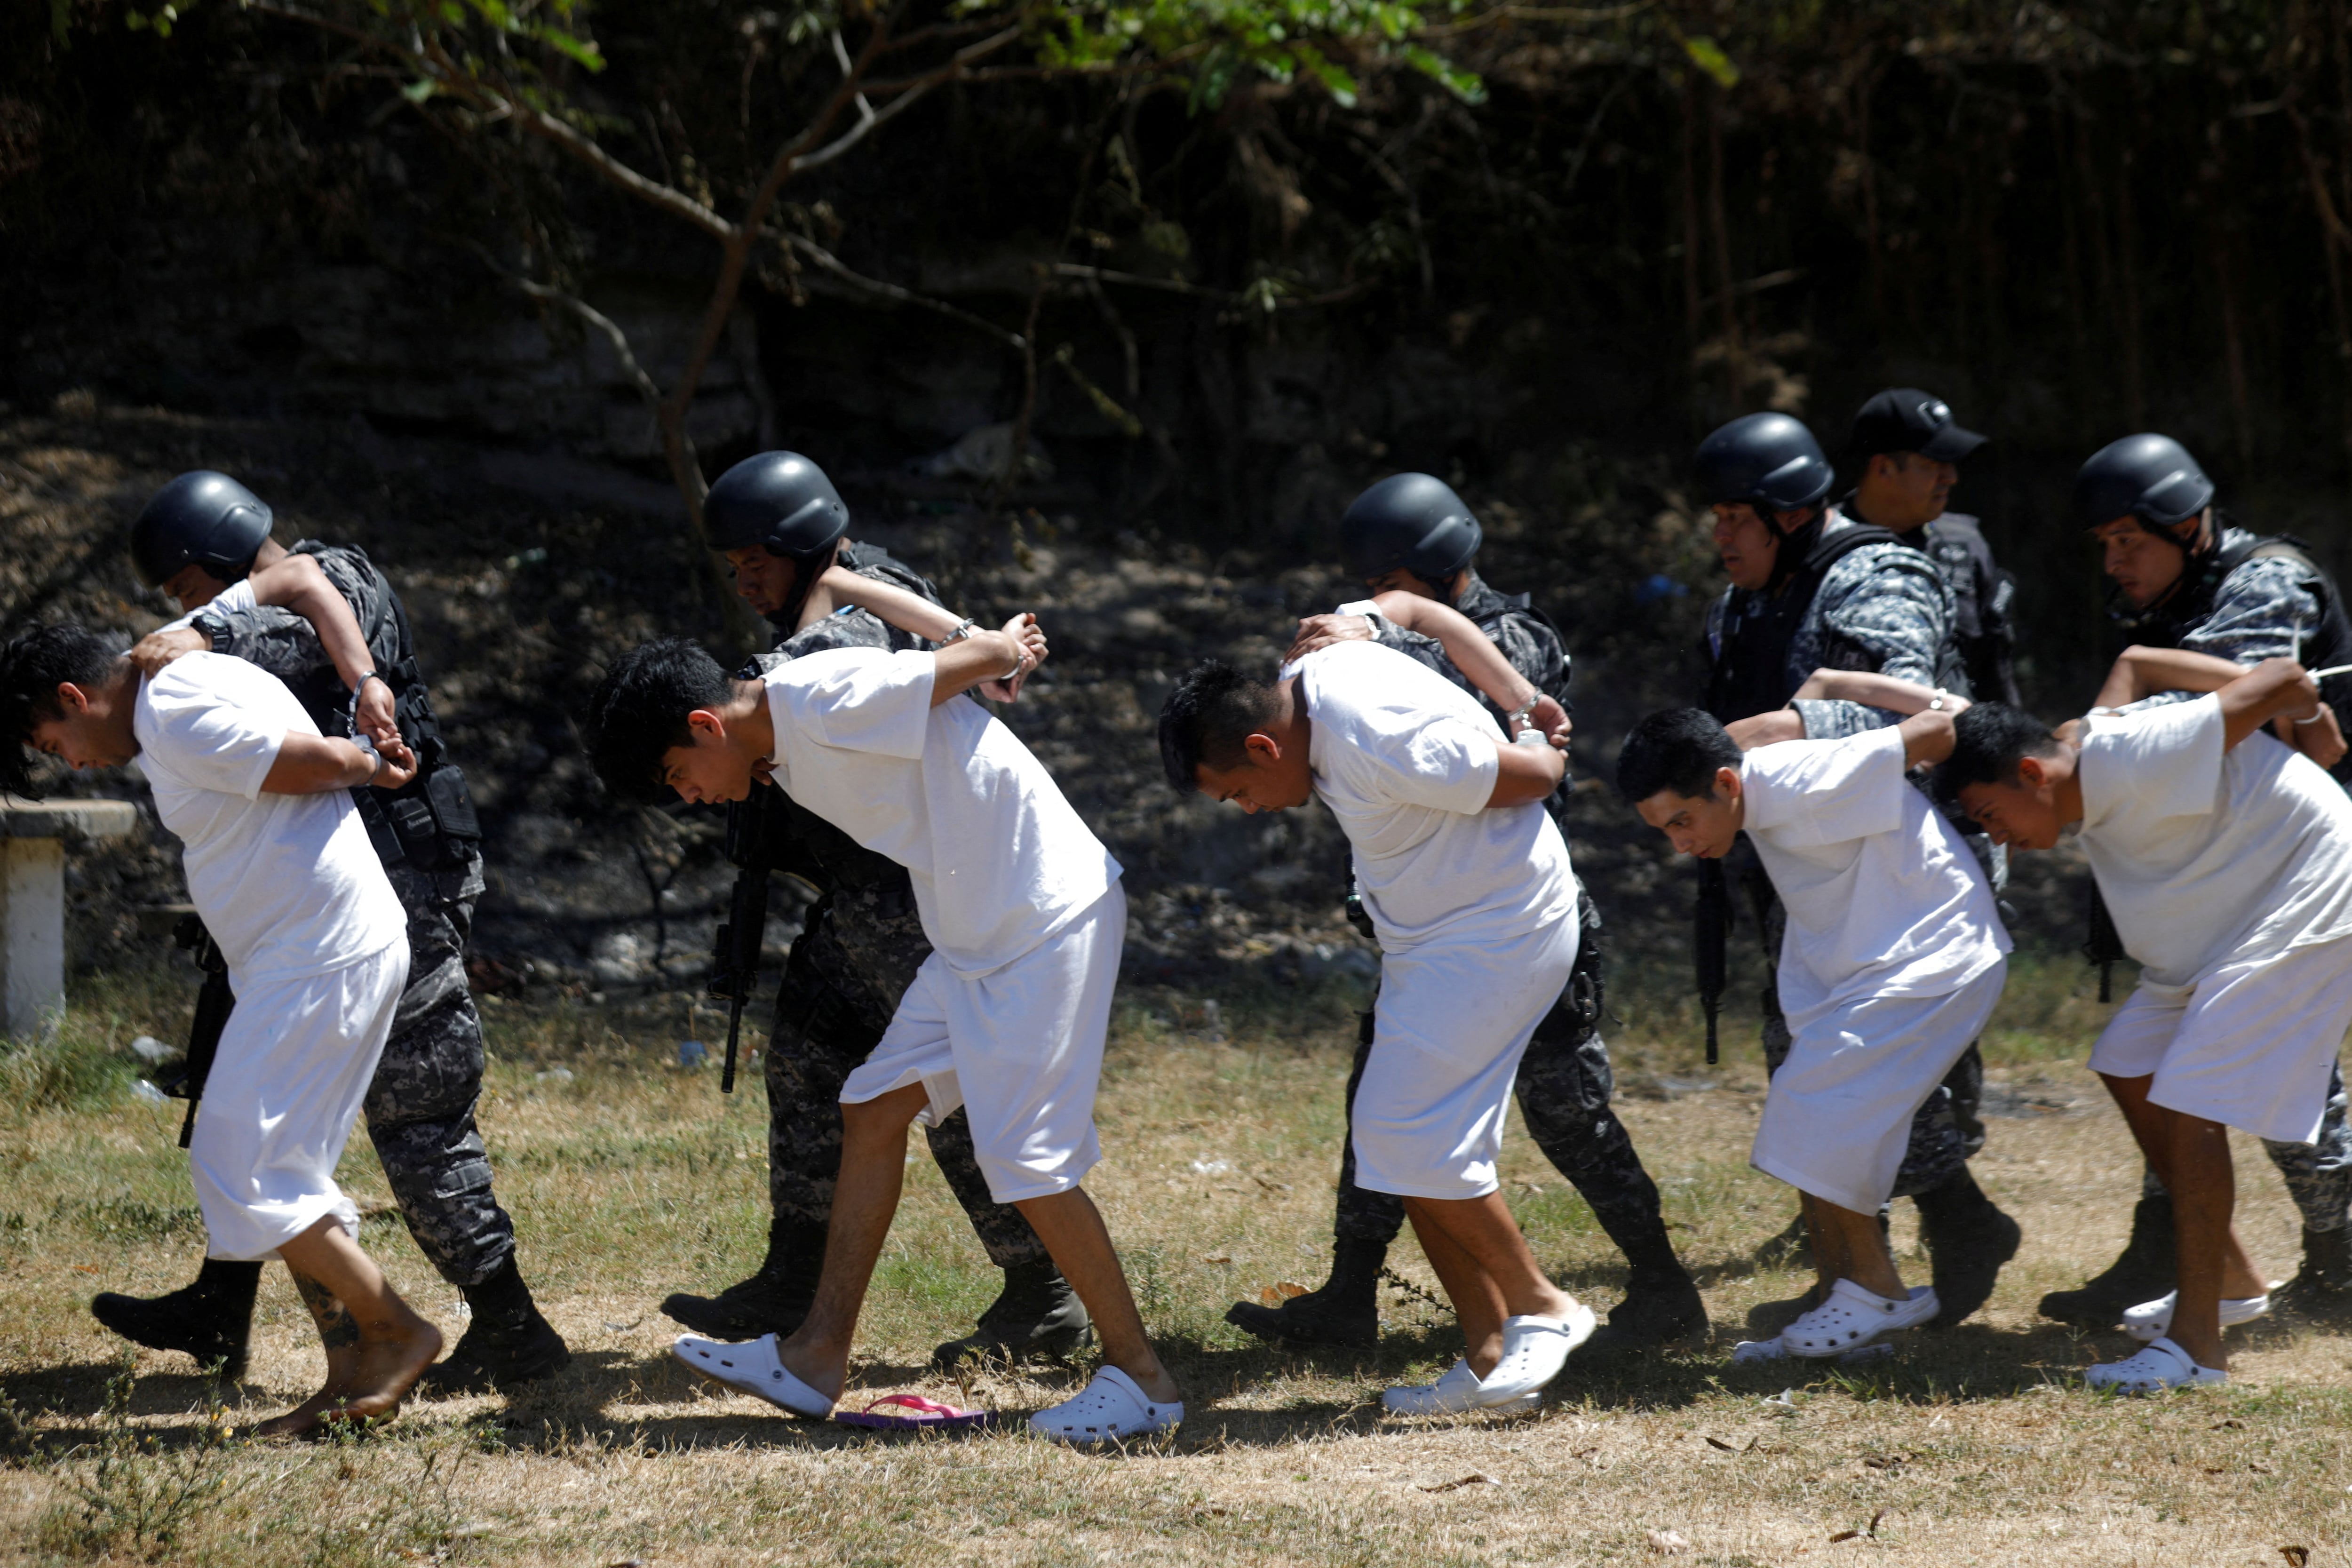 Organizaciones sociales sostiene que el “hecho violatorio” más denunciado en El Salvador es la detención arbitraria (REUTERS/Jose Cabezas)